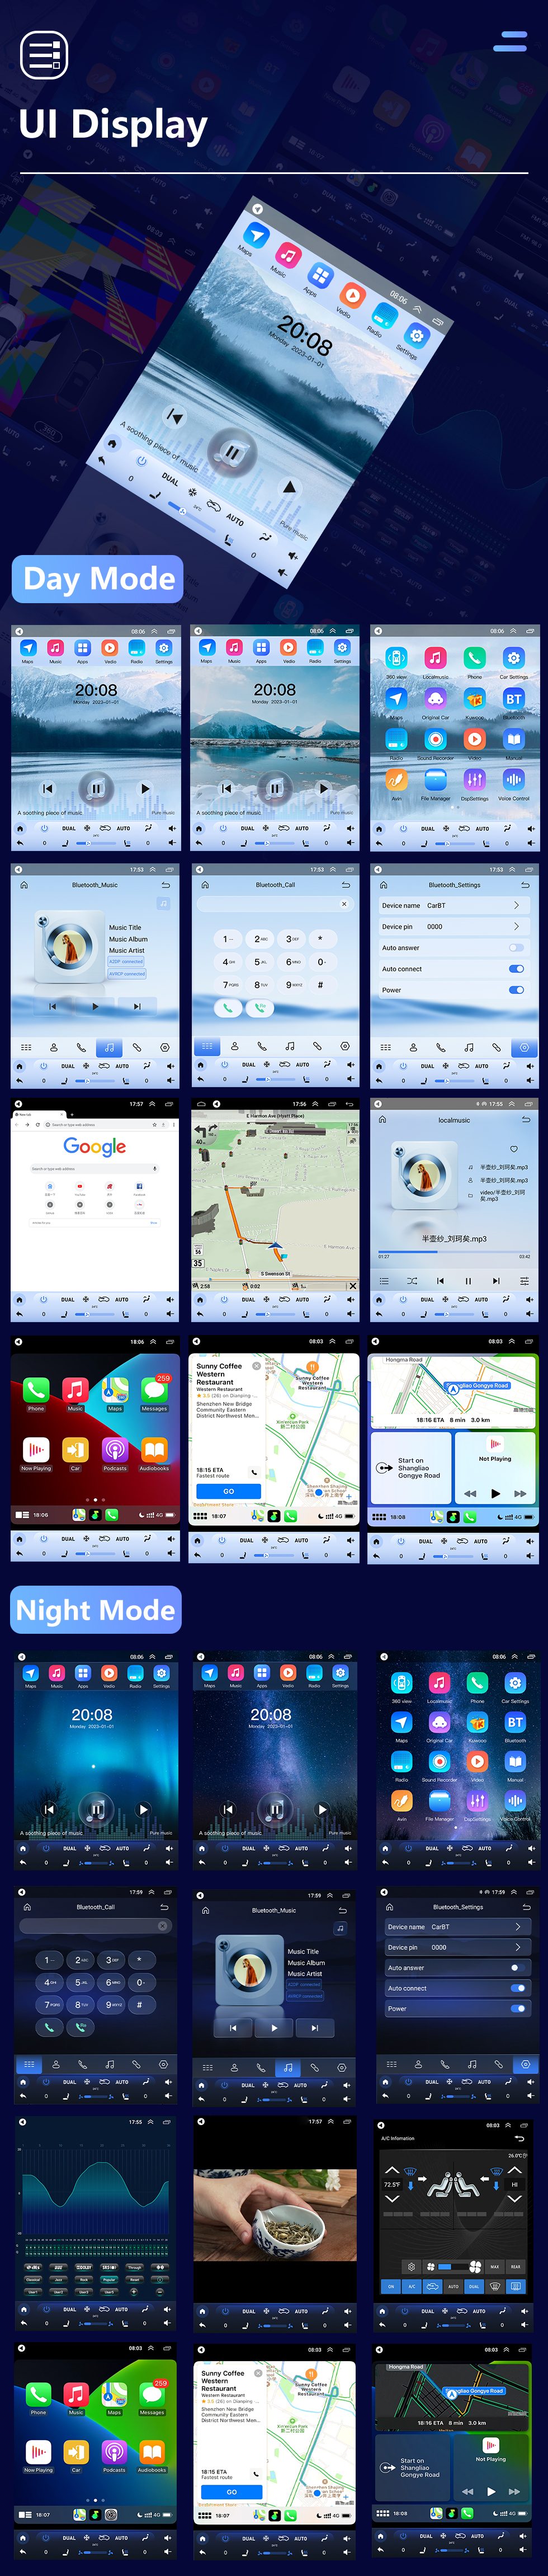 Seicane Android 10.0 9,7 Zoll für 2016 Toyota Prado Radio GPS Navigationssystem mit HD Touchscreen Bluetooth AUX Unterstützung Carplay DVR OBD2